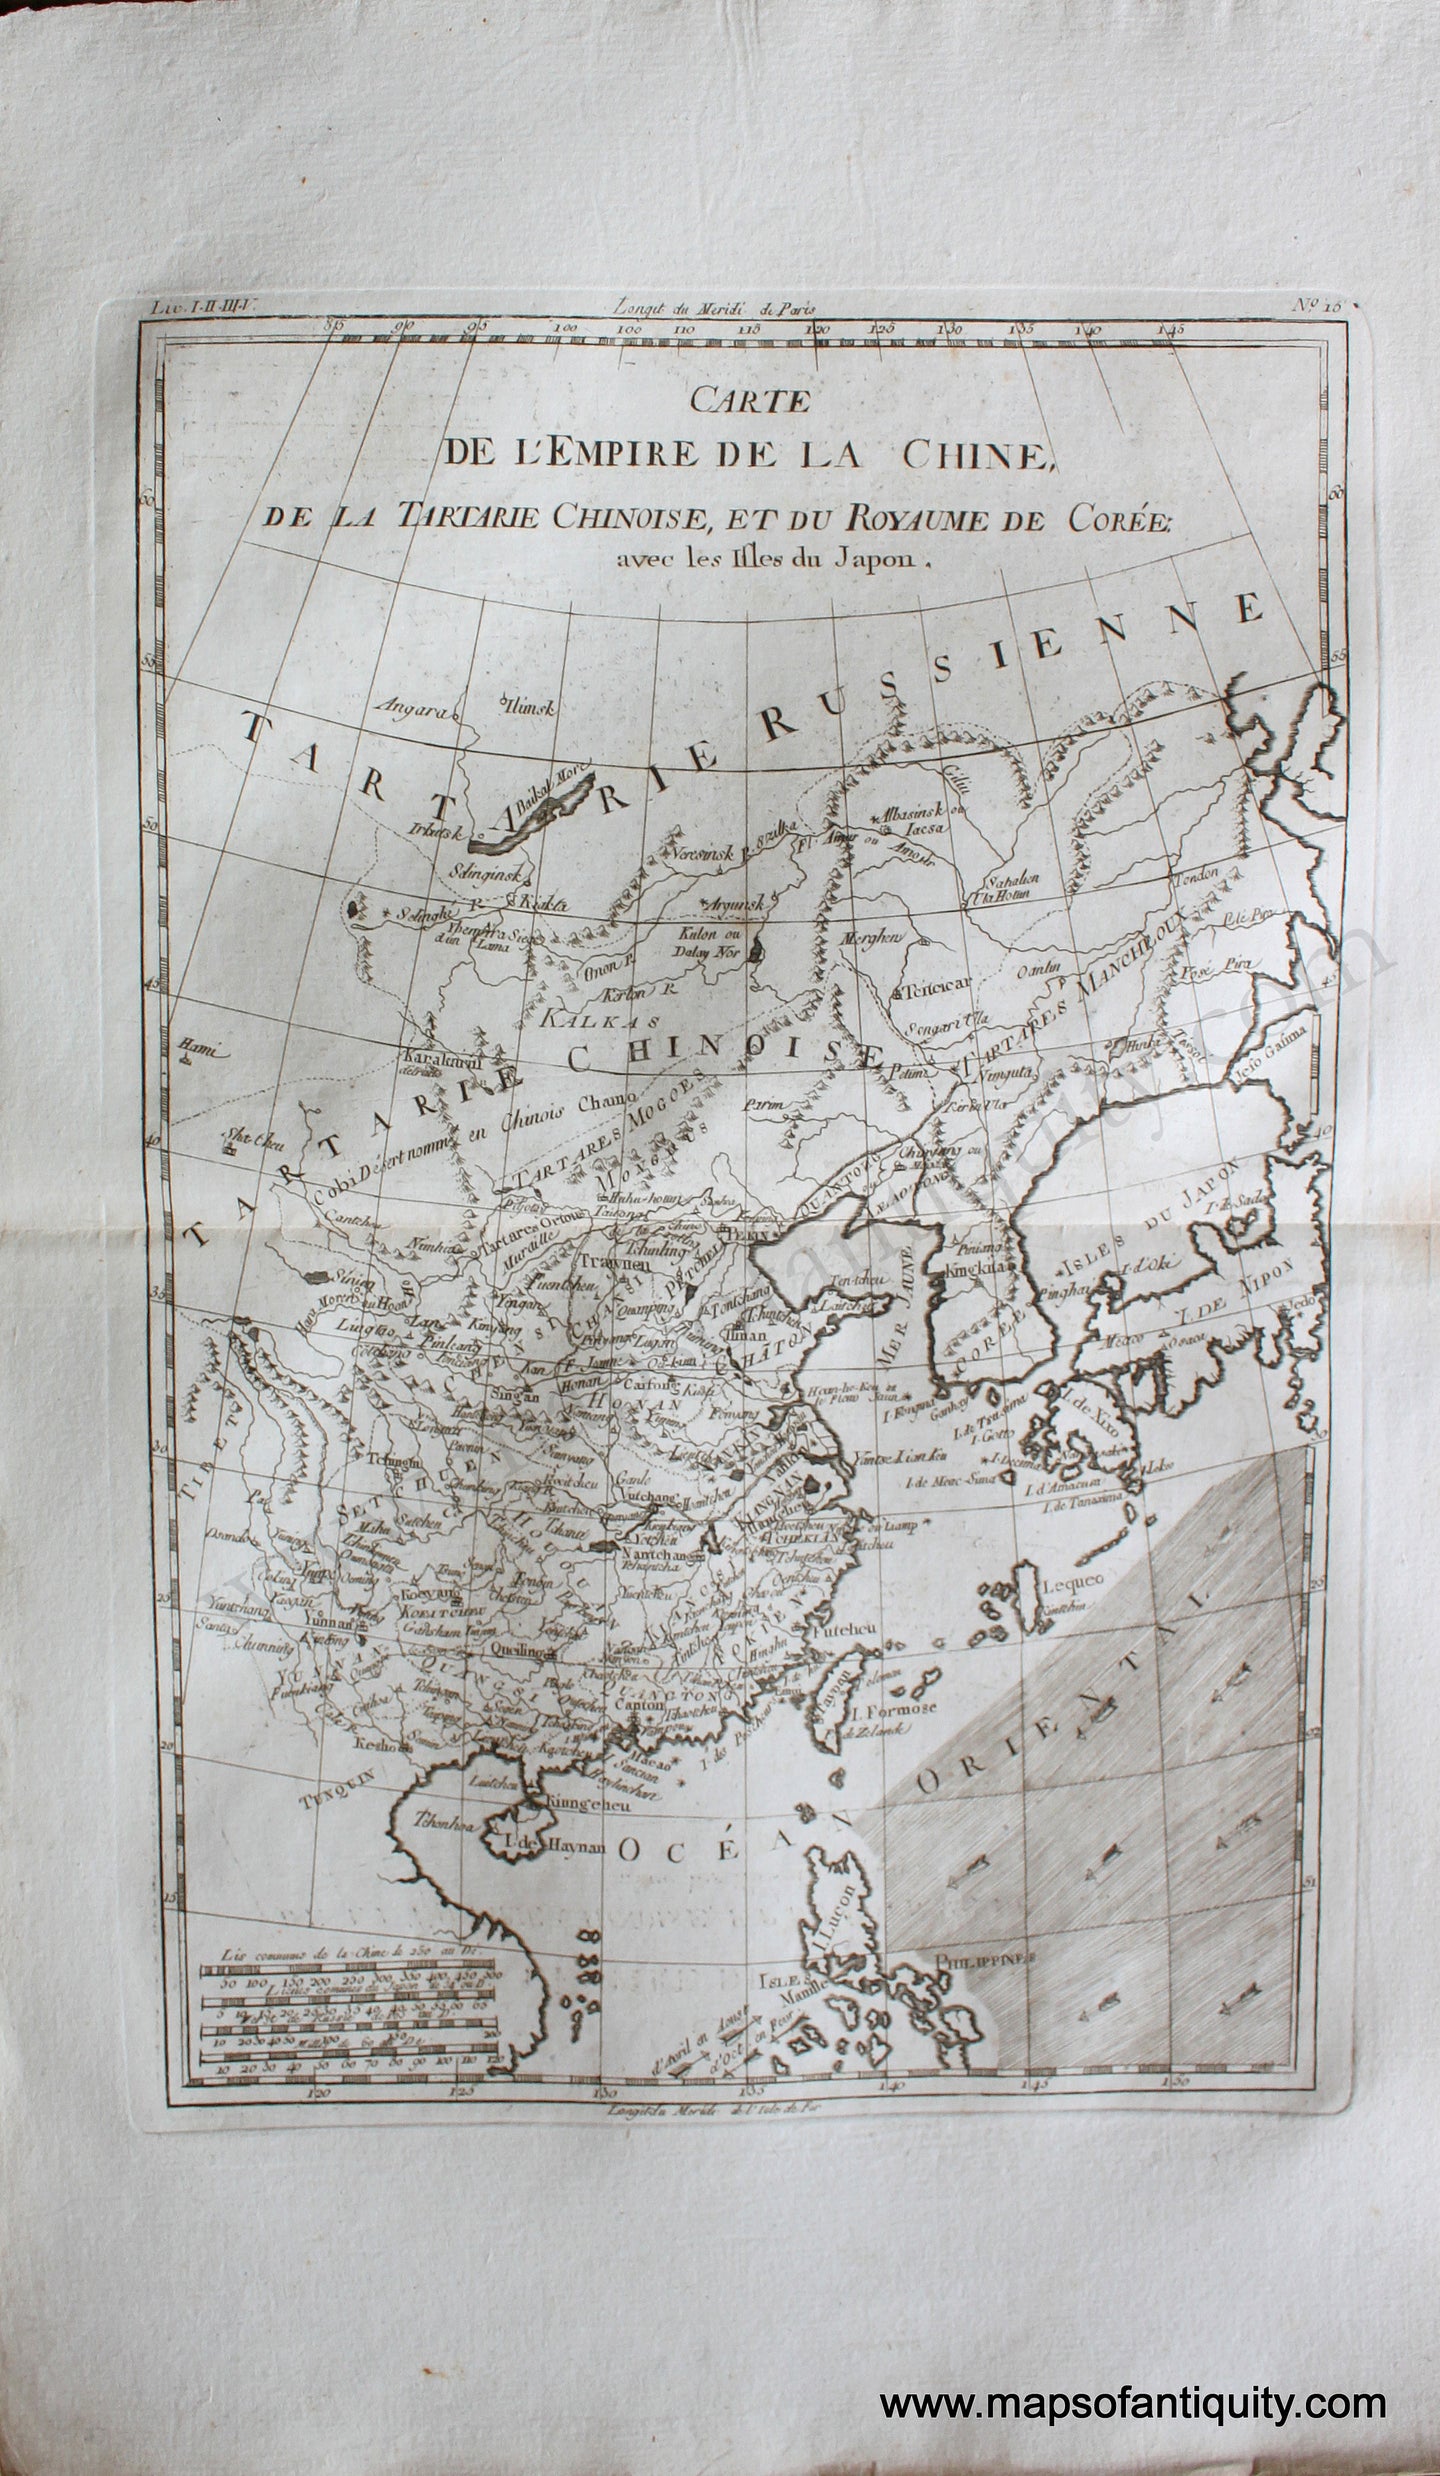 Antique-Hand-Colored-Map-Carte-de-L'Empire-de-la-Chine-la-Tartarie-Chinoise-et-le-Royaume-de-Coree-avec-les-isles-du-Japon.-Asia-China-1780-Raynal-and-Bonne-Maps-Of-Antiquity